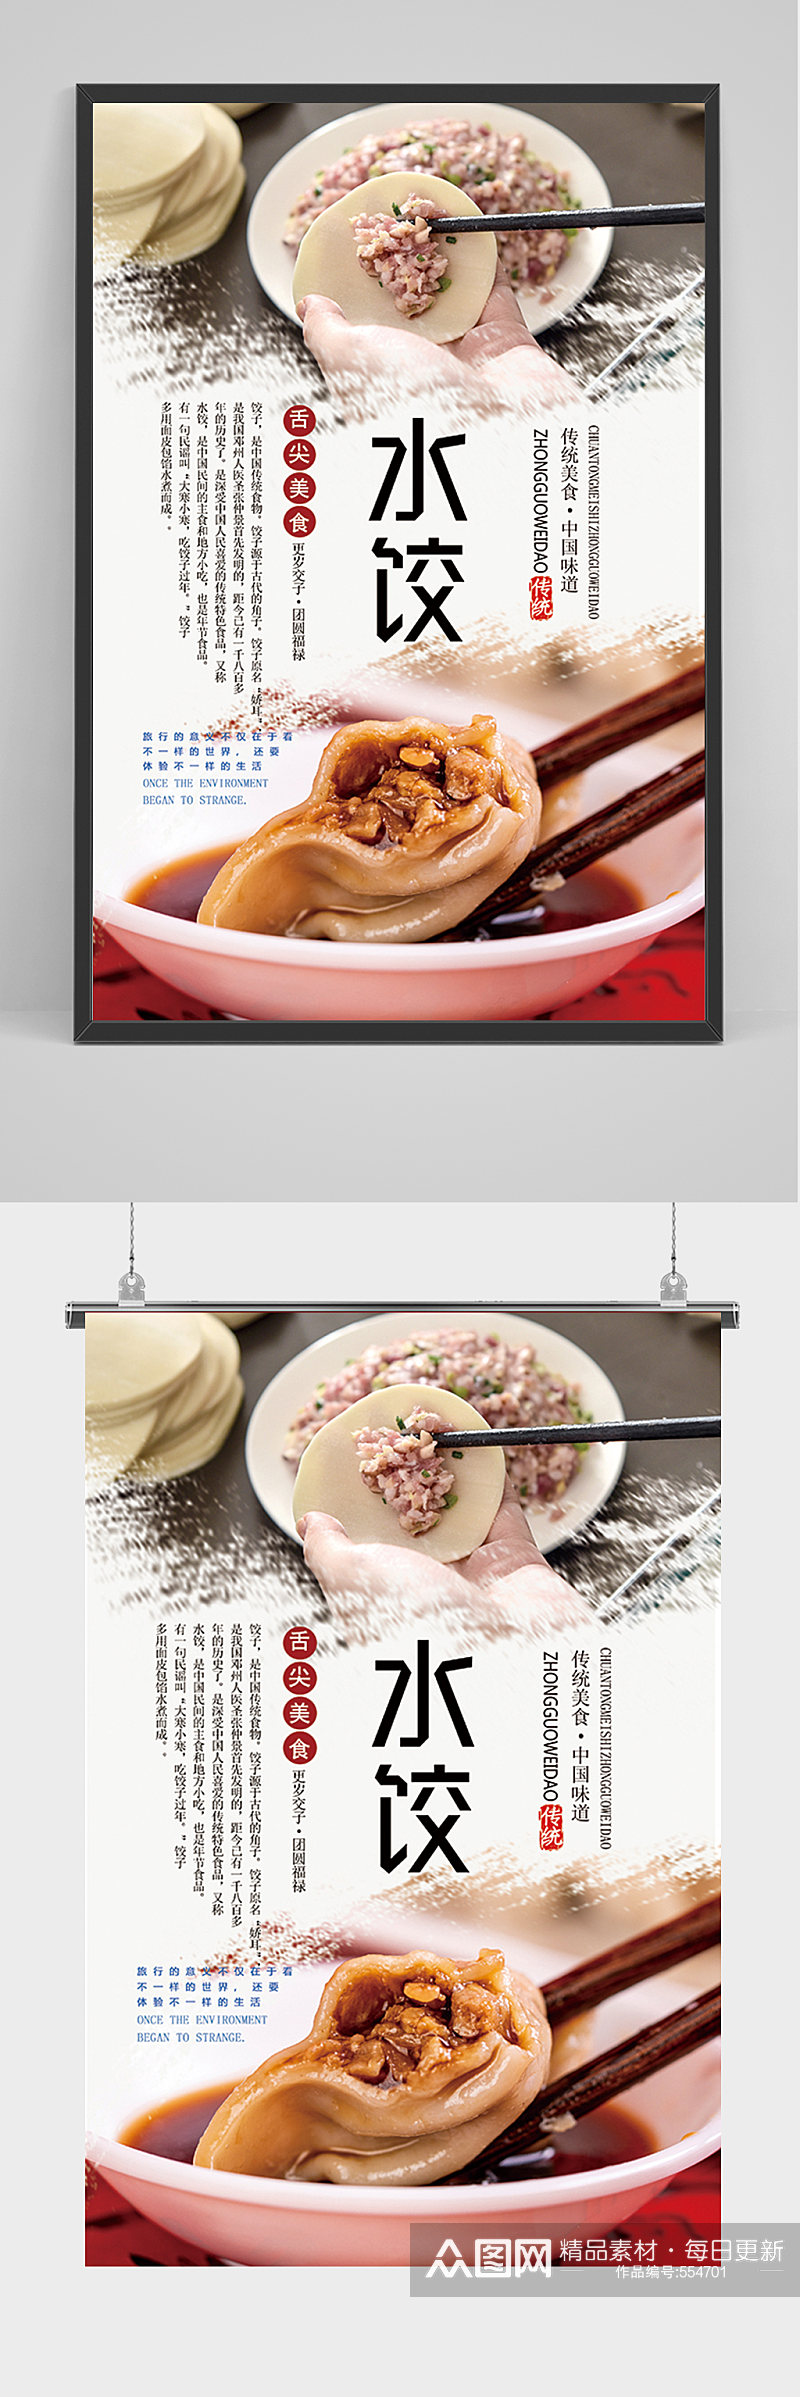 简约水饺宣传海报素材